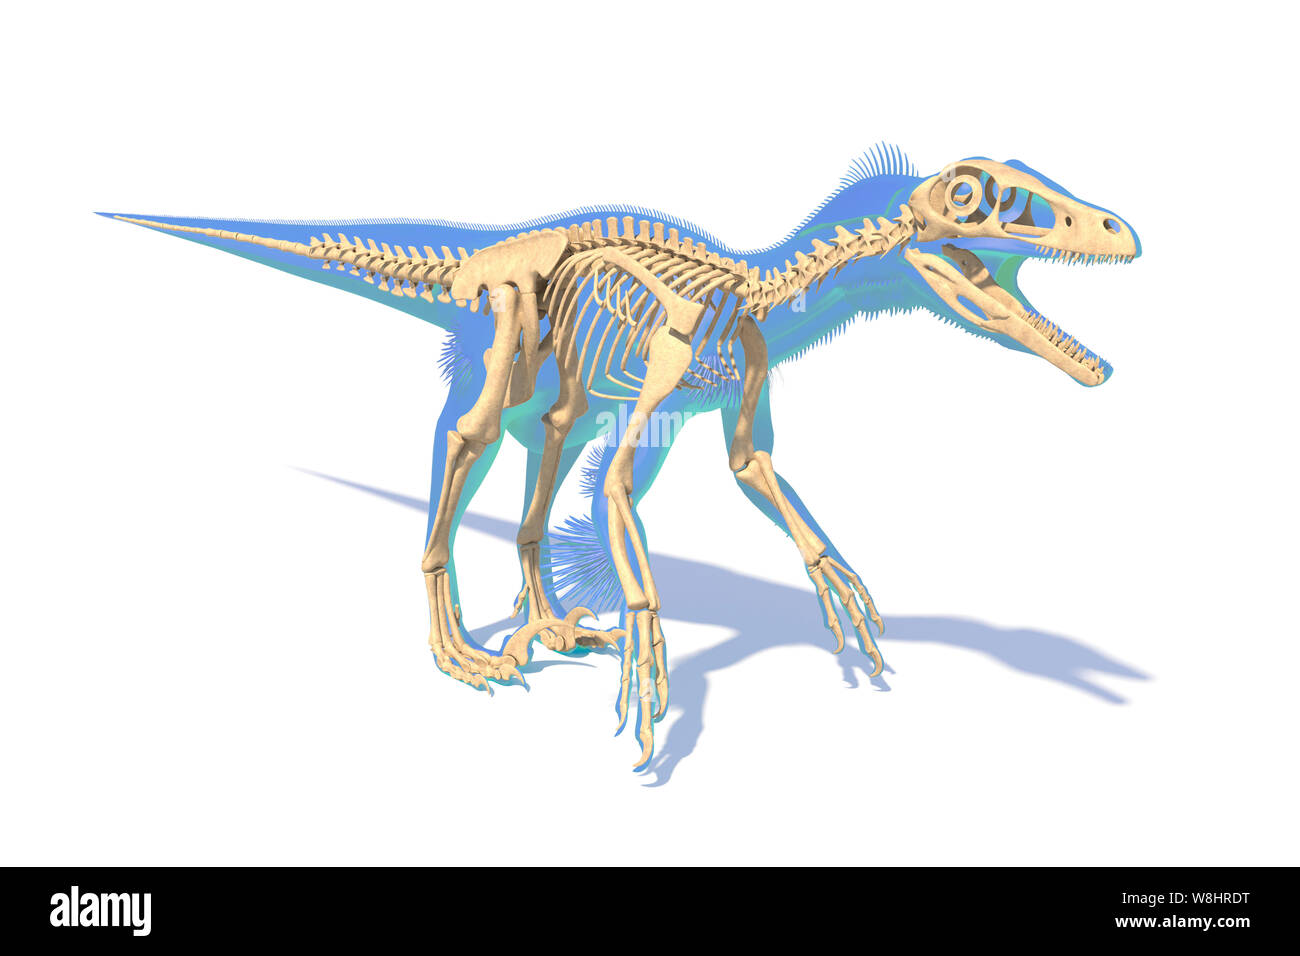 Dinosauro Utahraptor struttura scheletrica, illustrazione. Questi dinosauri vivevano durante l'inizio del periodo Cretaceo, circa 126 milioni di anni fa. Foto Stock